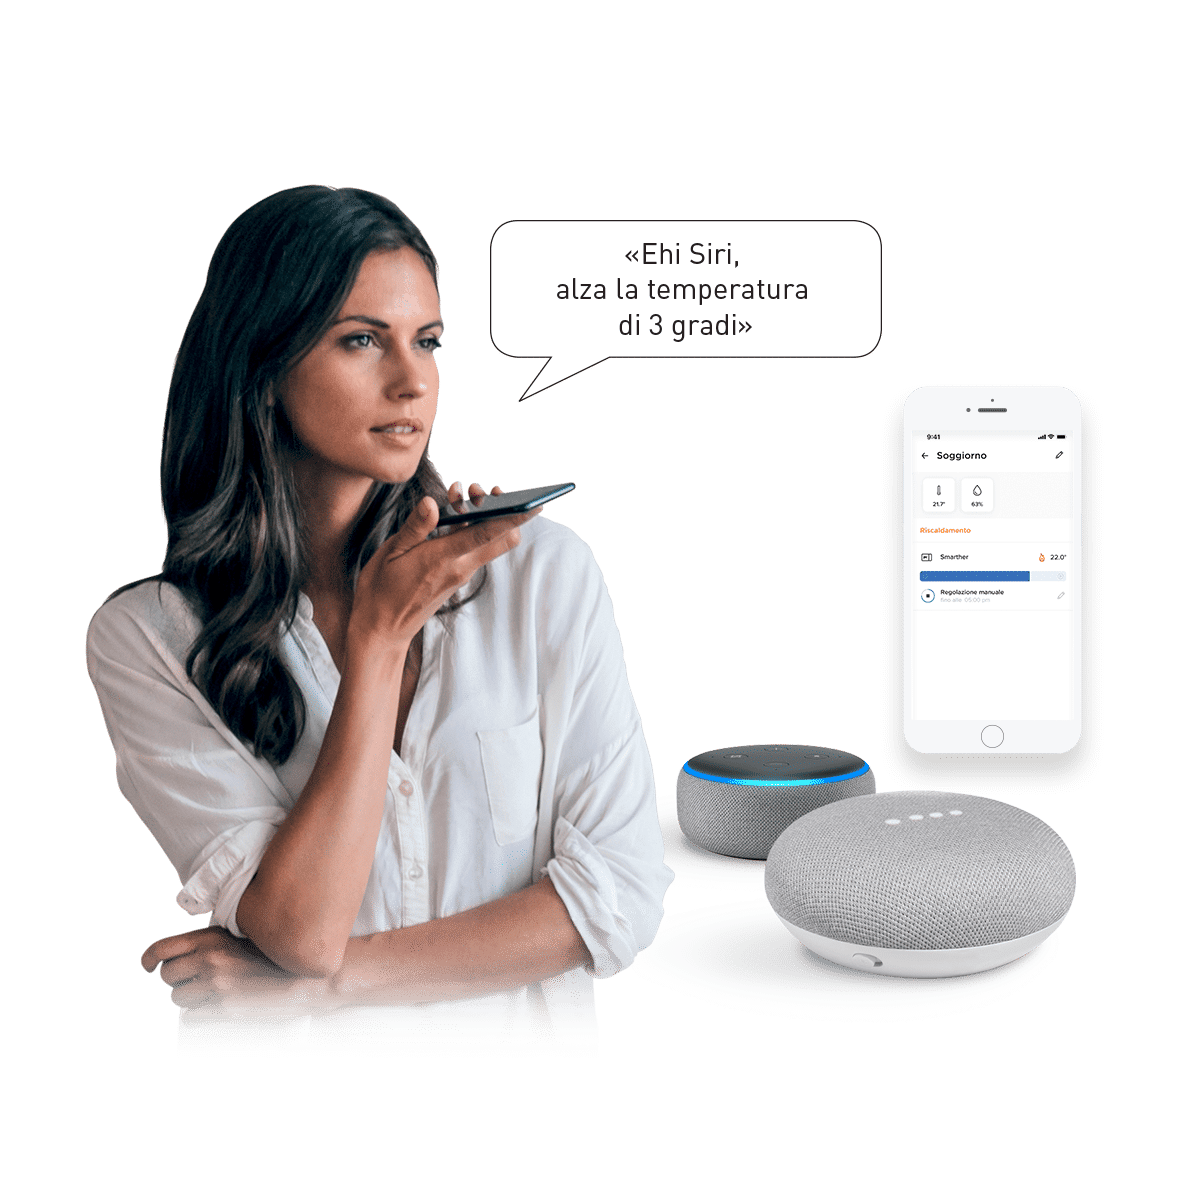 Termostato con WiFi integrato  Smarther2 - Il termostato connesso